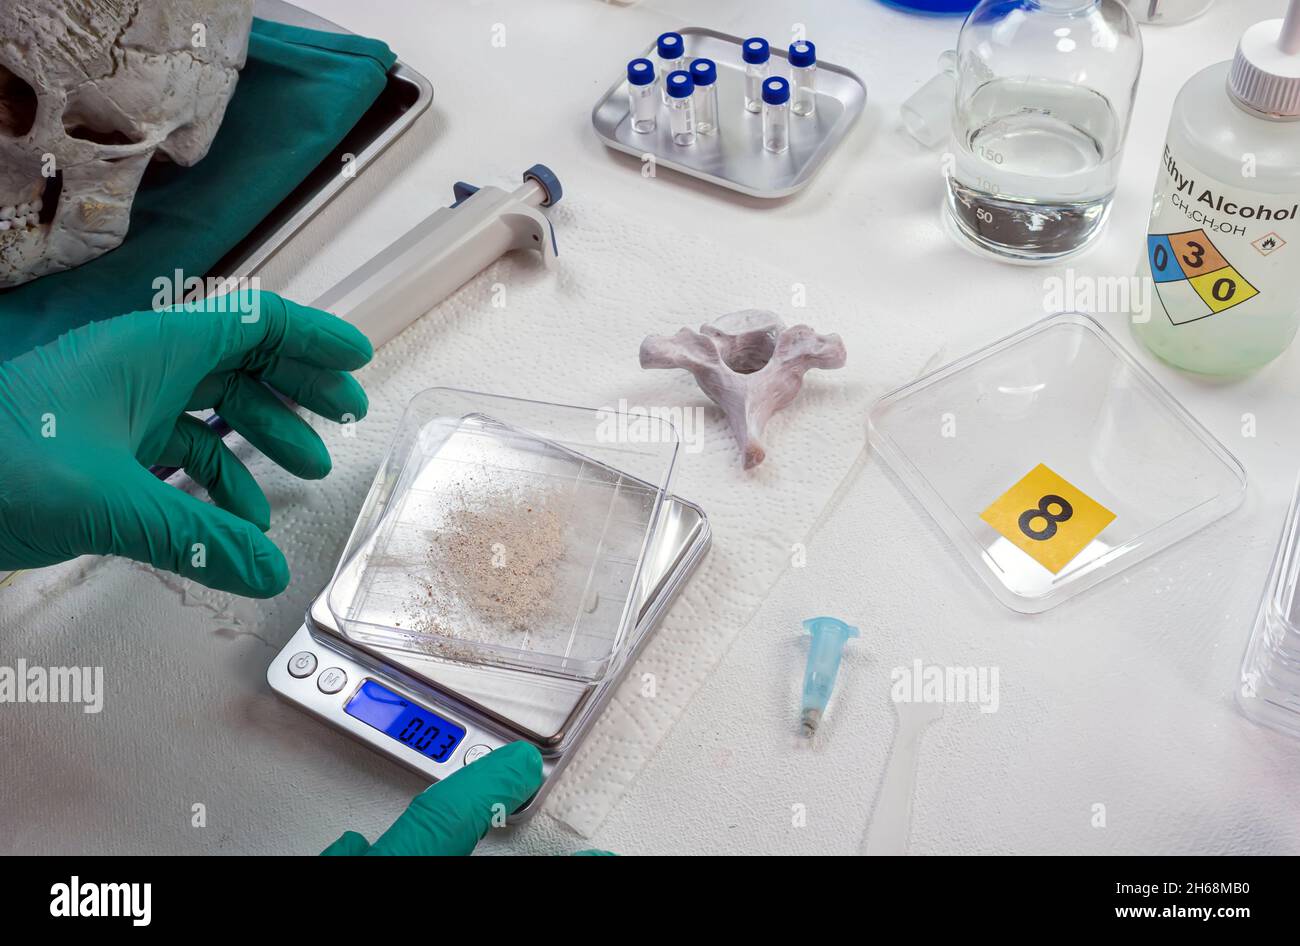 La police criminelle pèse un échantillon de poudre osseuse humaine sur une échelle électronique pour l'analyse de l'ADN, image conceptuelle Banque D'Images